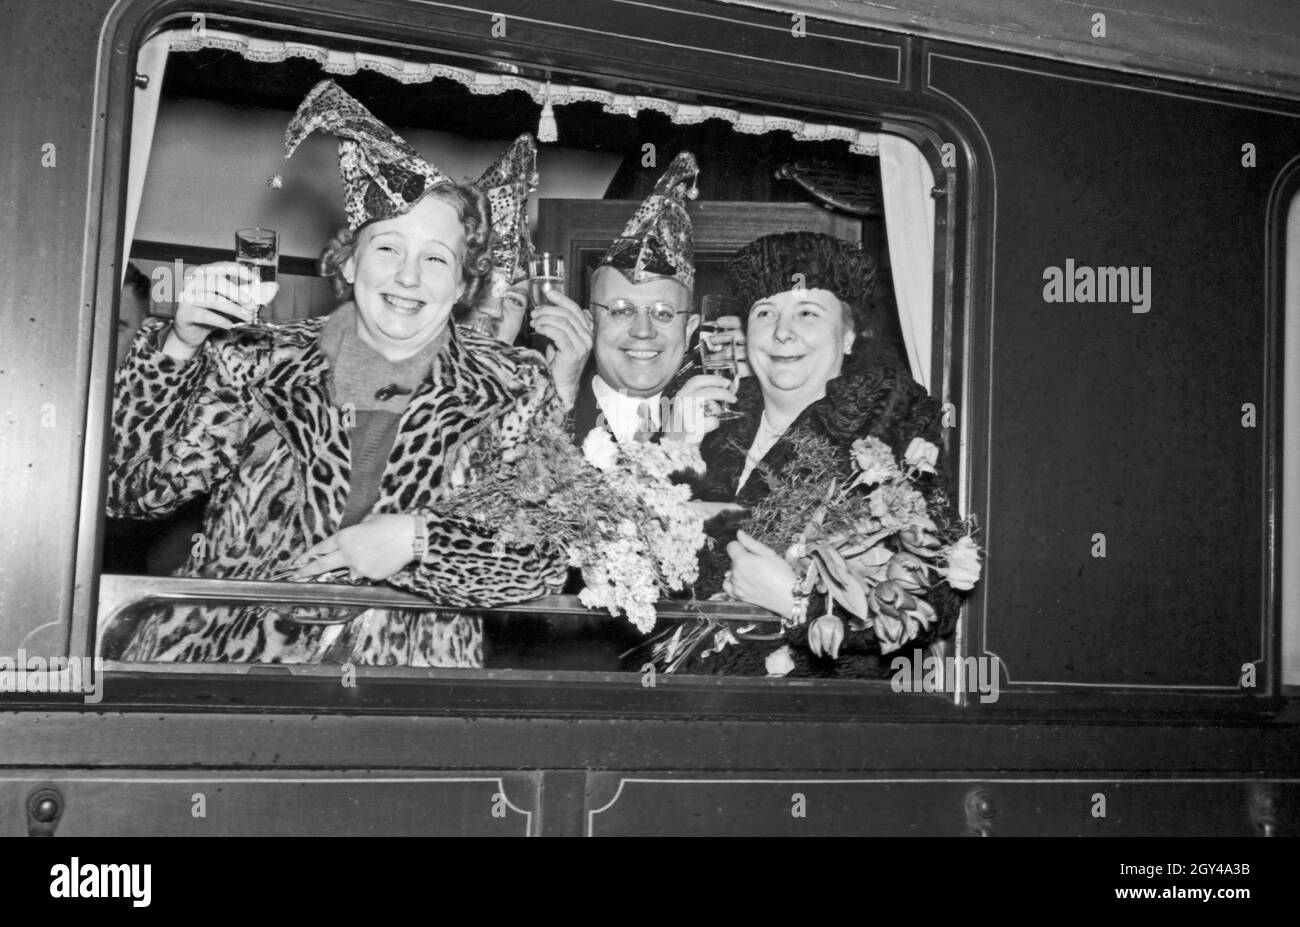 Die Prinzessin der Mainzer Fastnacht 1938, Hildegard Kühne, prostet aus einem Zugfenster dem Fotografen zu. Carnival princess Hildegard Kuehne raising her glass out of the window of a train to the photographer, 1938. Stock Photo